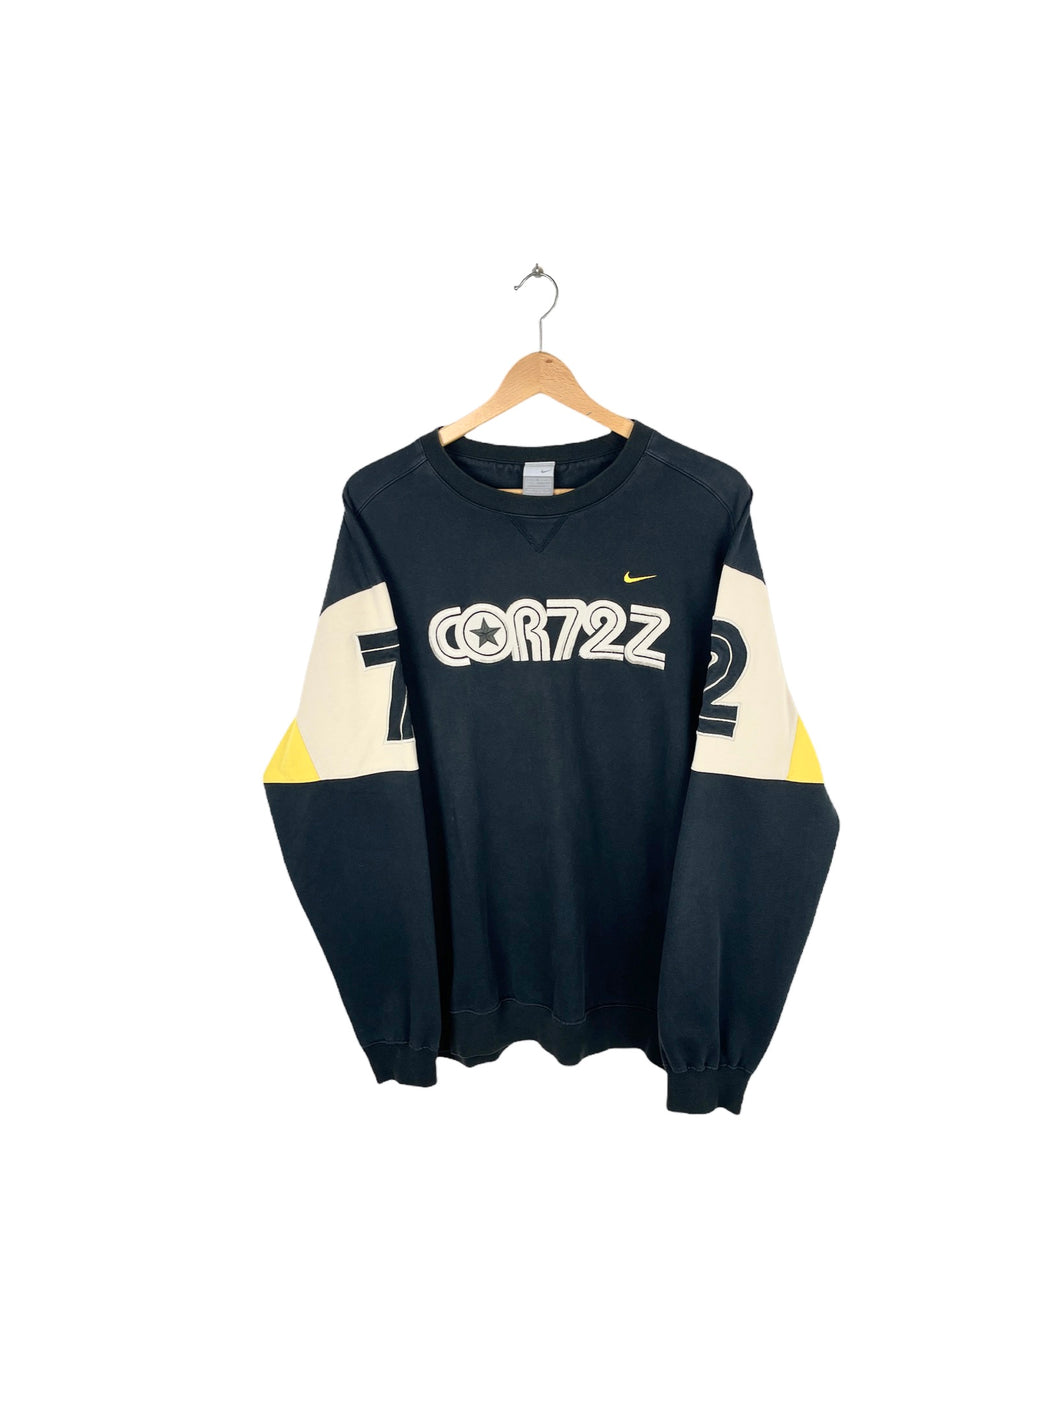 Nike Cortez Sweatshirt - XXLarge